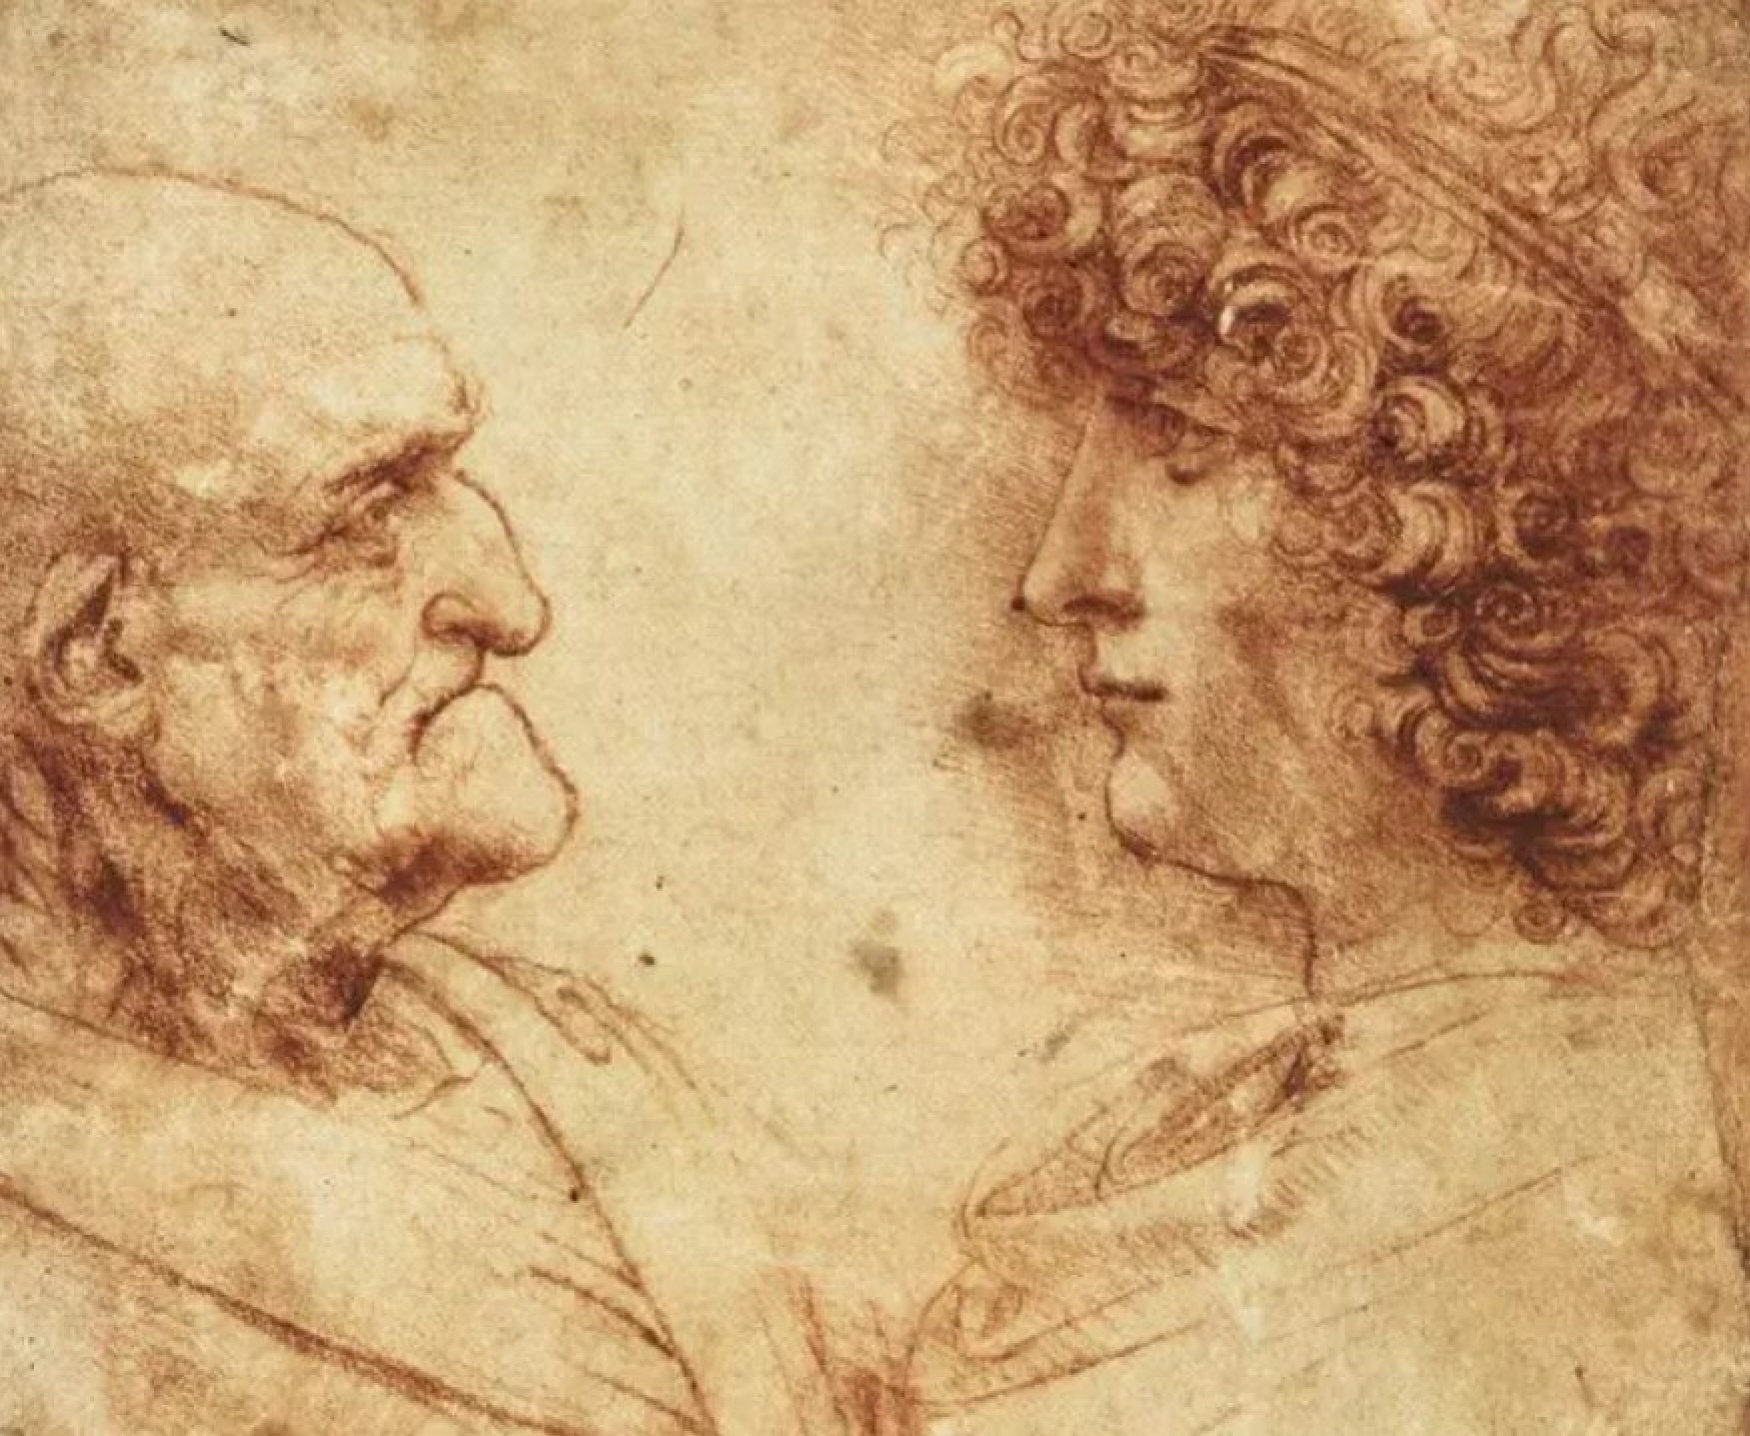 История любви в картинах. Леонардо да Винчи и Салаи | Пикабу